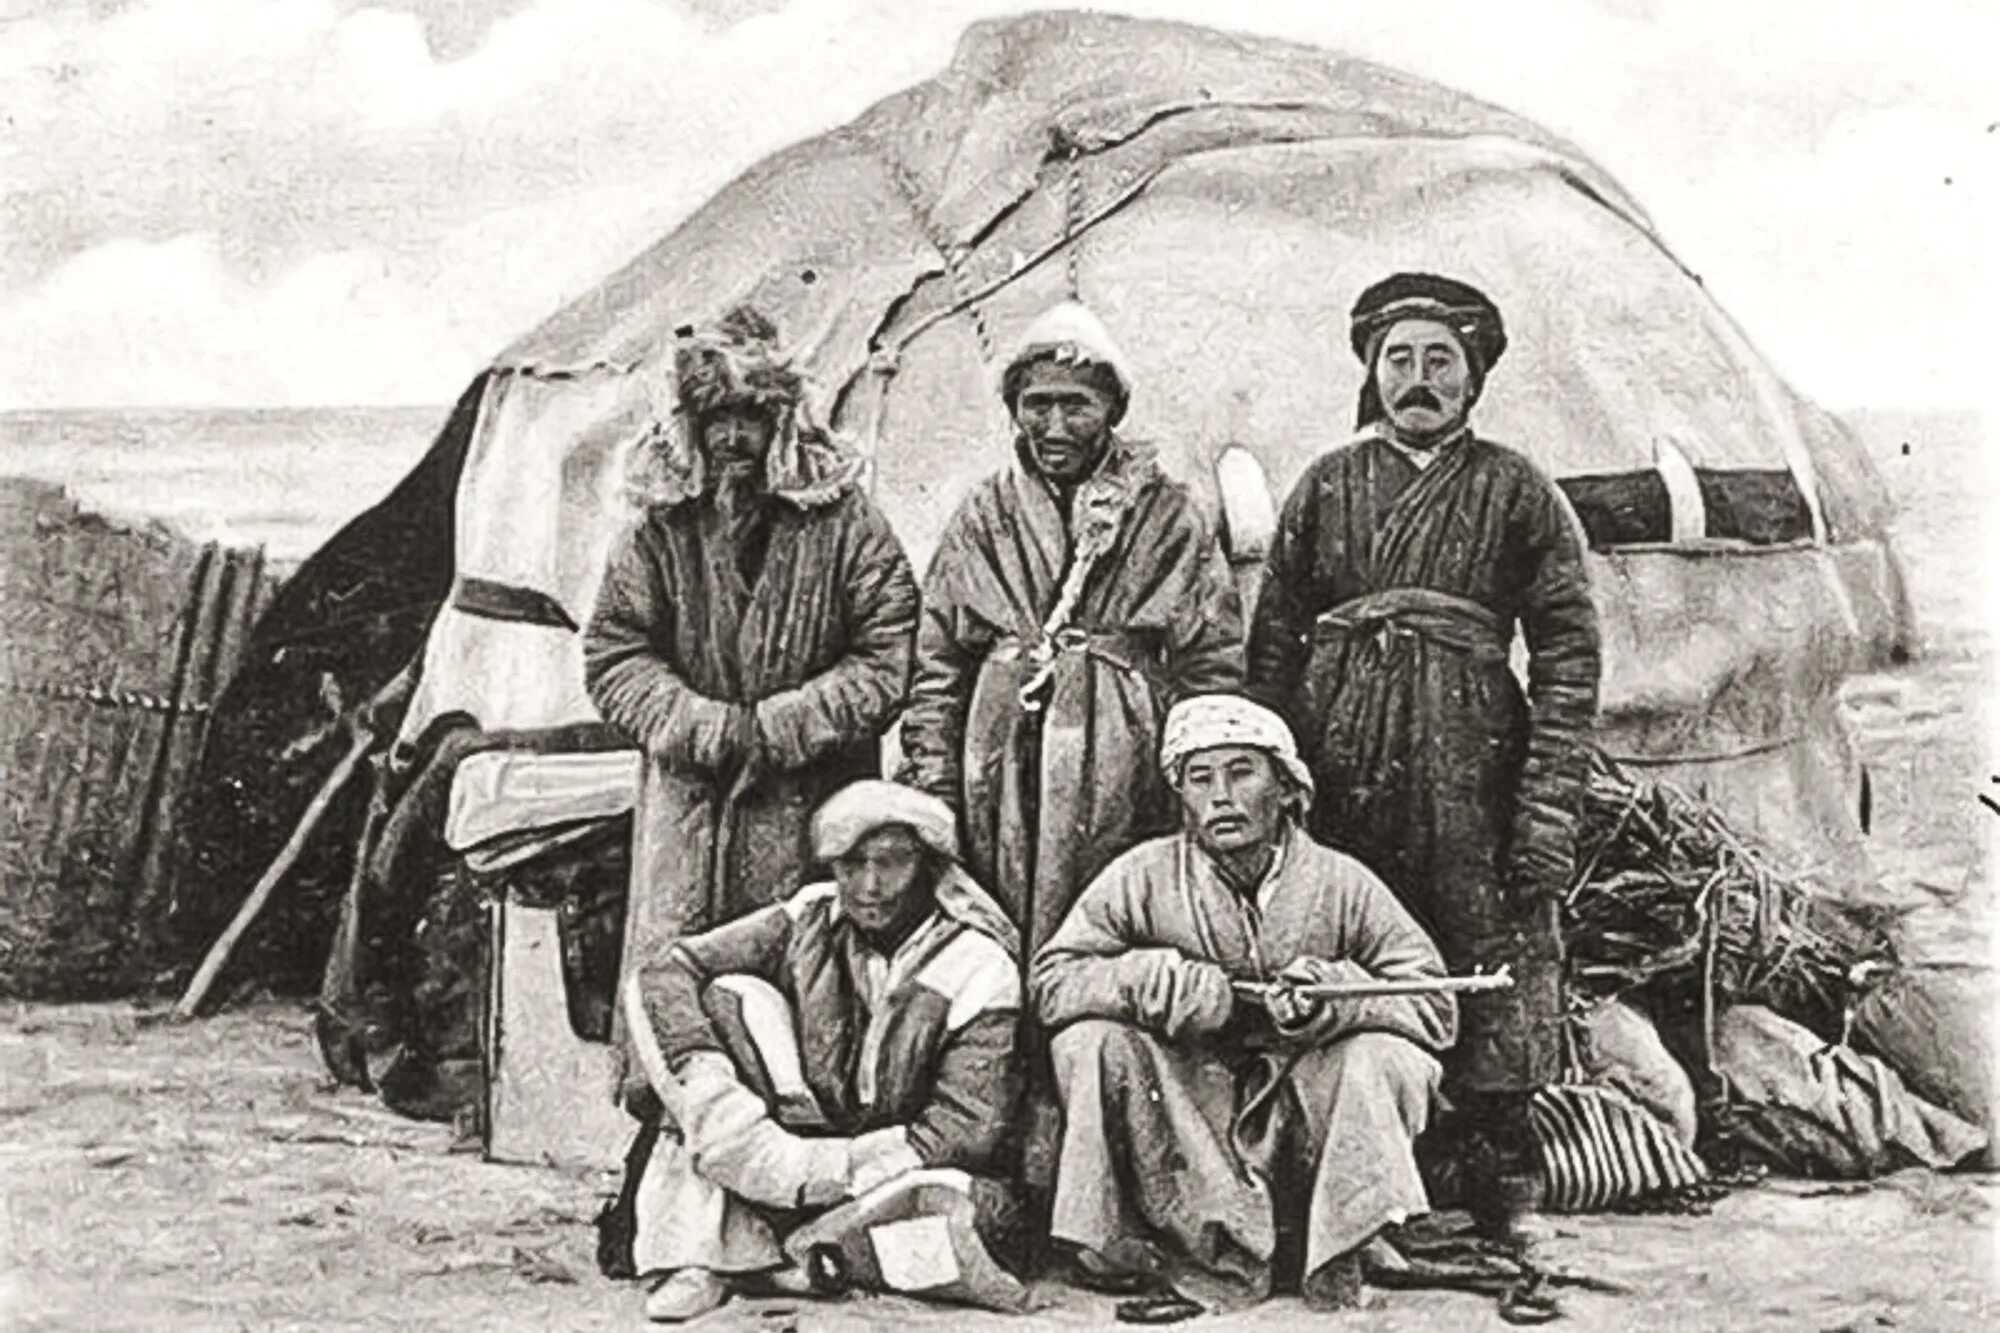 Казахи 19 век. Юрты алтайцев 19 век. Киргизские кочевники 19 век. Киргизы Азии 19 век. Казахская степь 19 век.